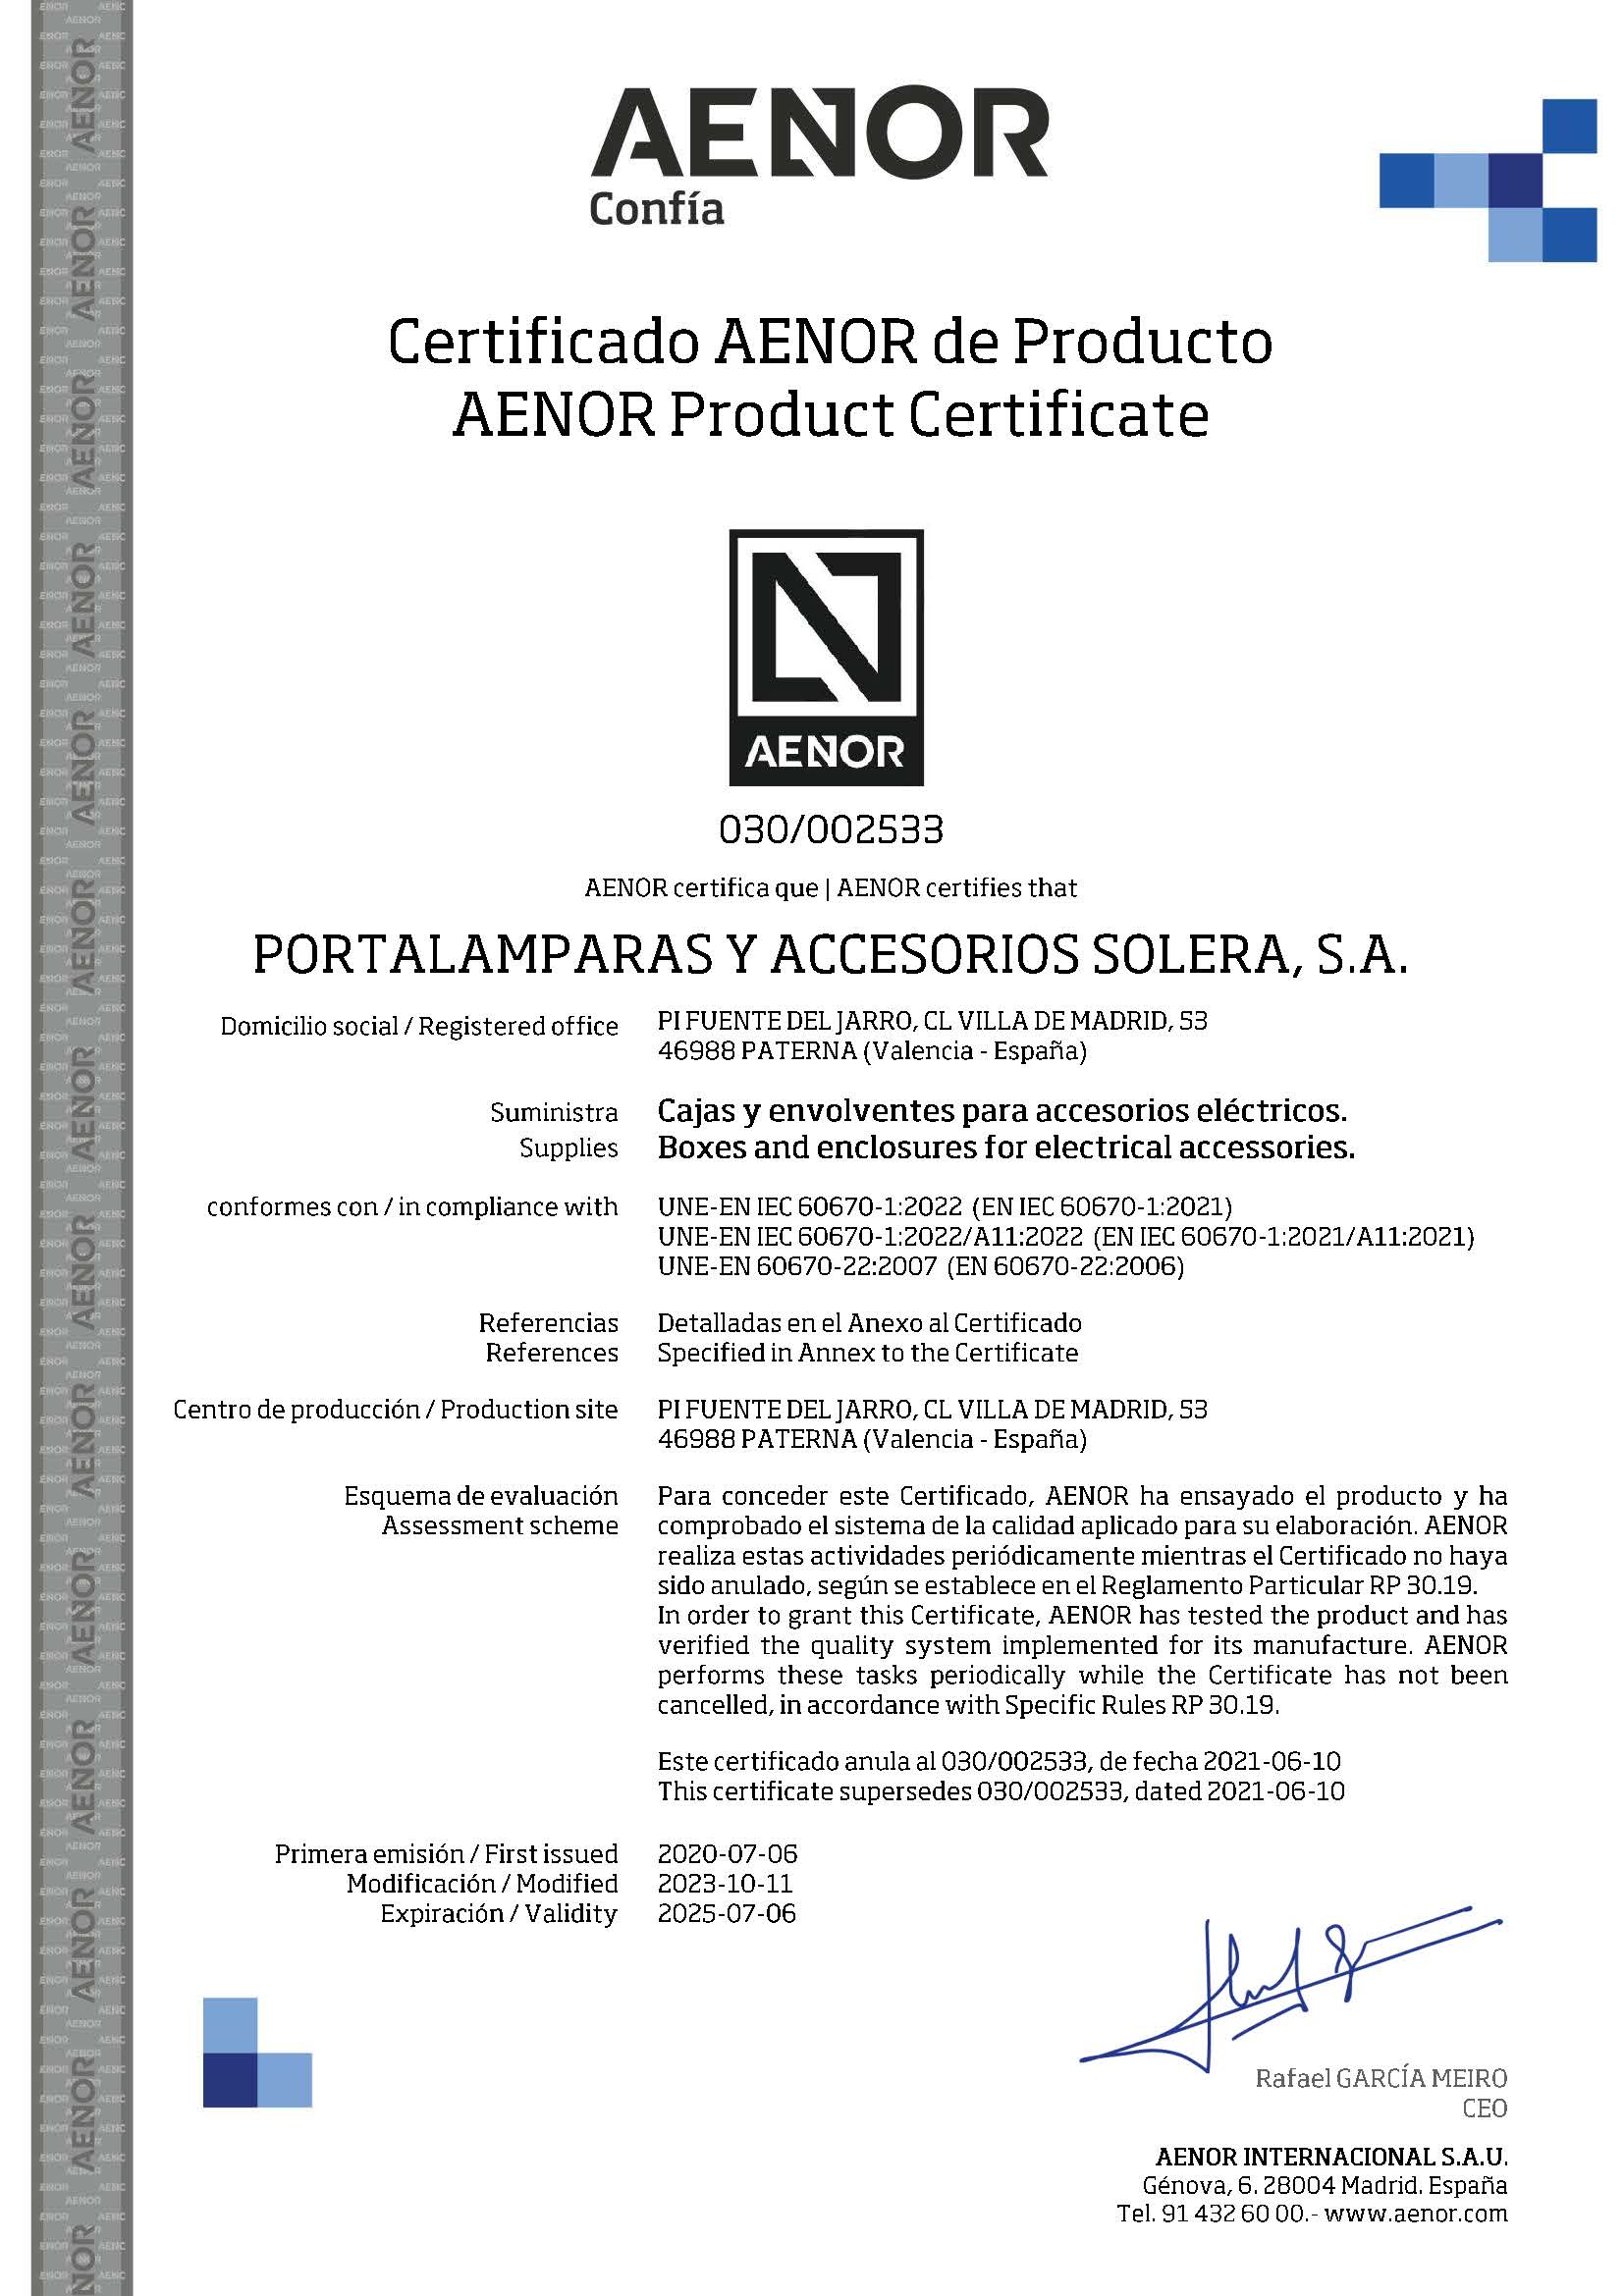 Certificado de producto AENOR para serie Ybox